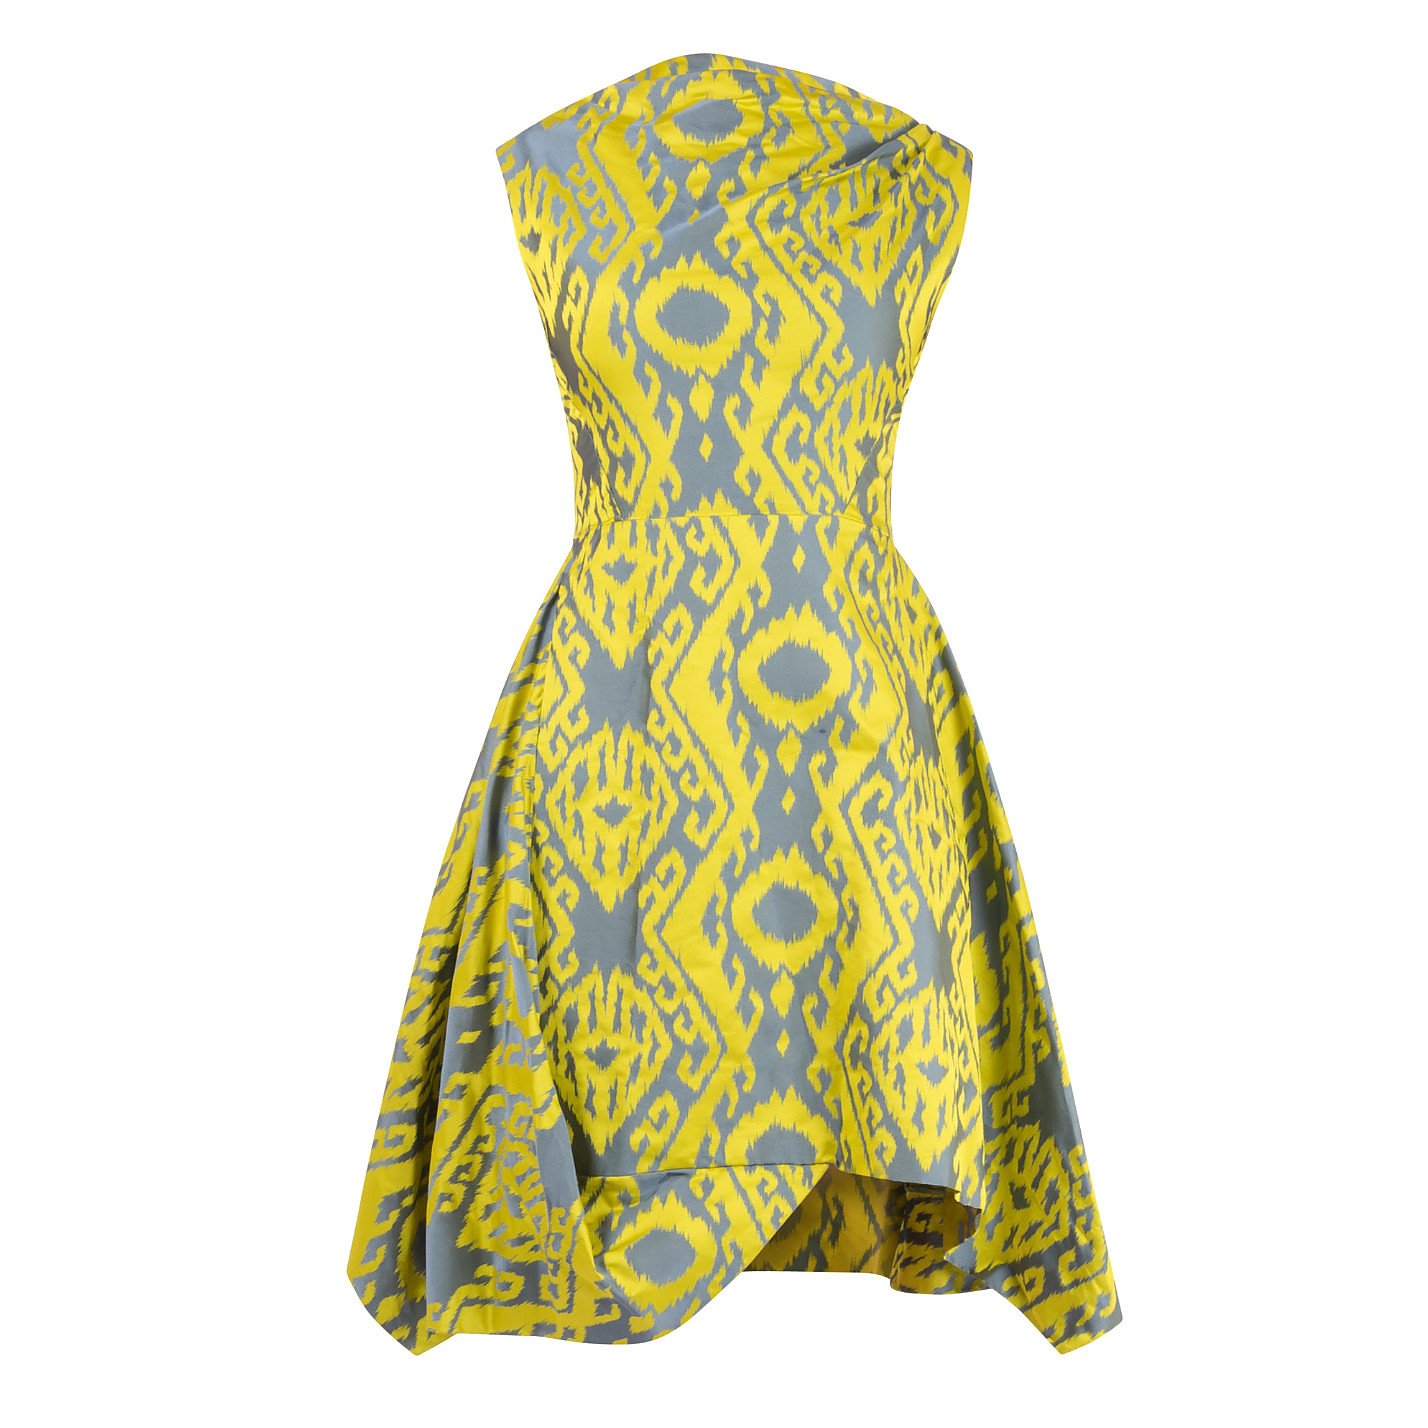 Vivienne Westwood Printed Asymmetric Dress